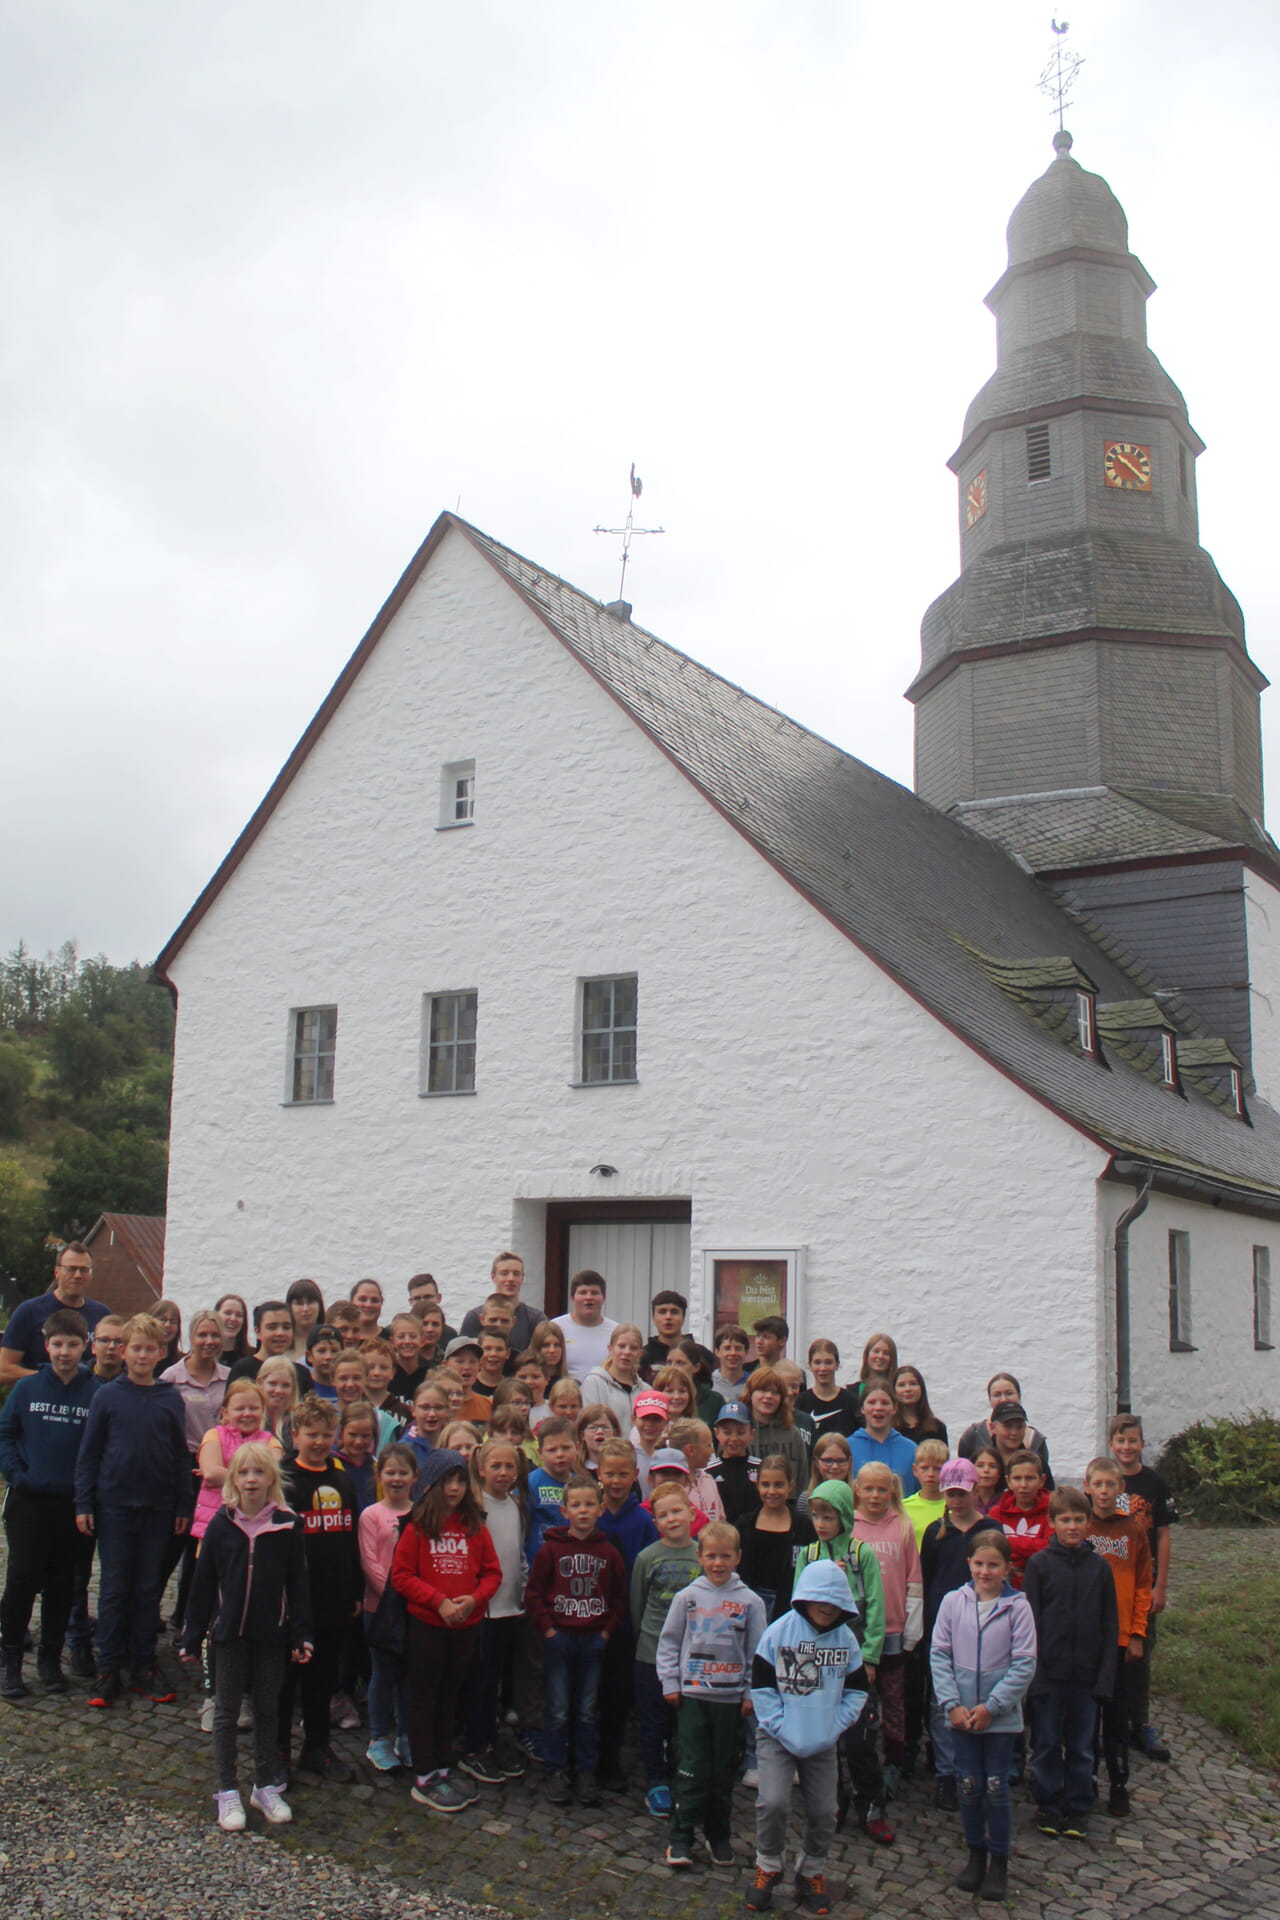 Knapp 60 Mädchen und Jungen nahmen auch in diesem Jahr wieder an der Kinderferienwoche in Fischelbach teil, Organisator Jürgen Schneider freute sich über den großen Zuspruch und 20 weitere Ehrenamtliche im Mitarbeitenden-Team.